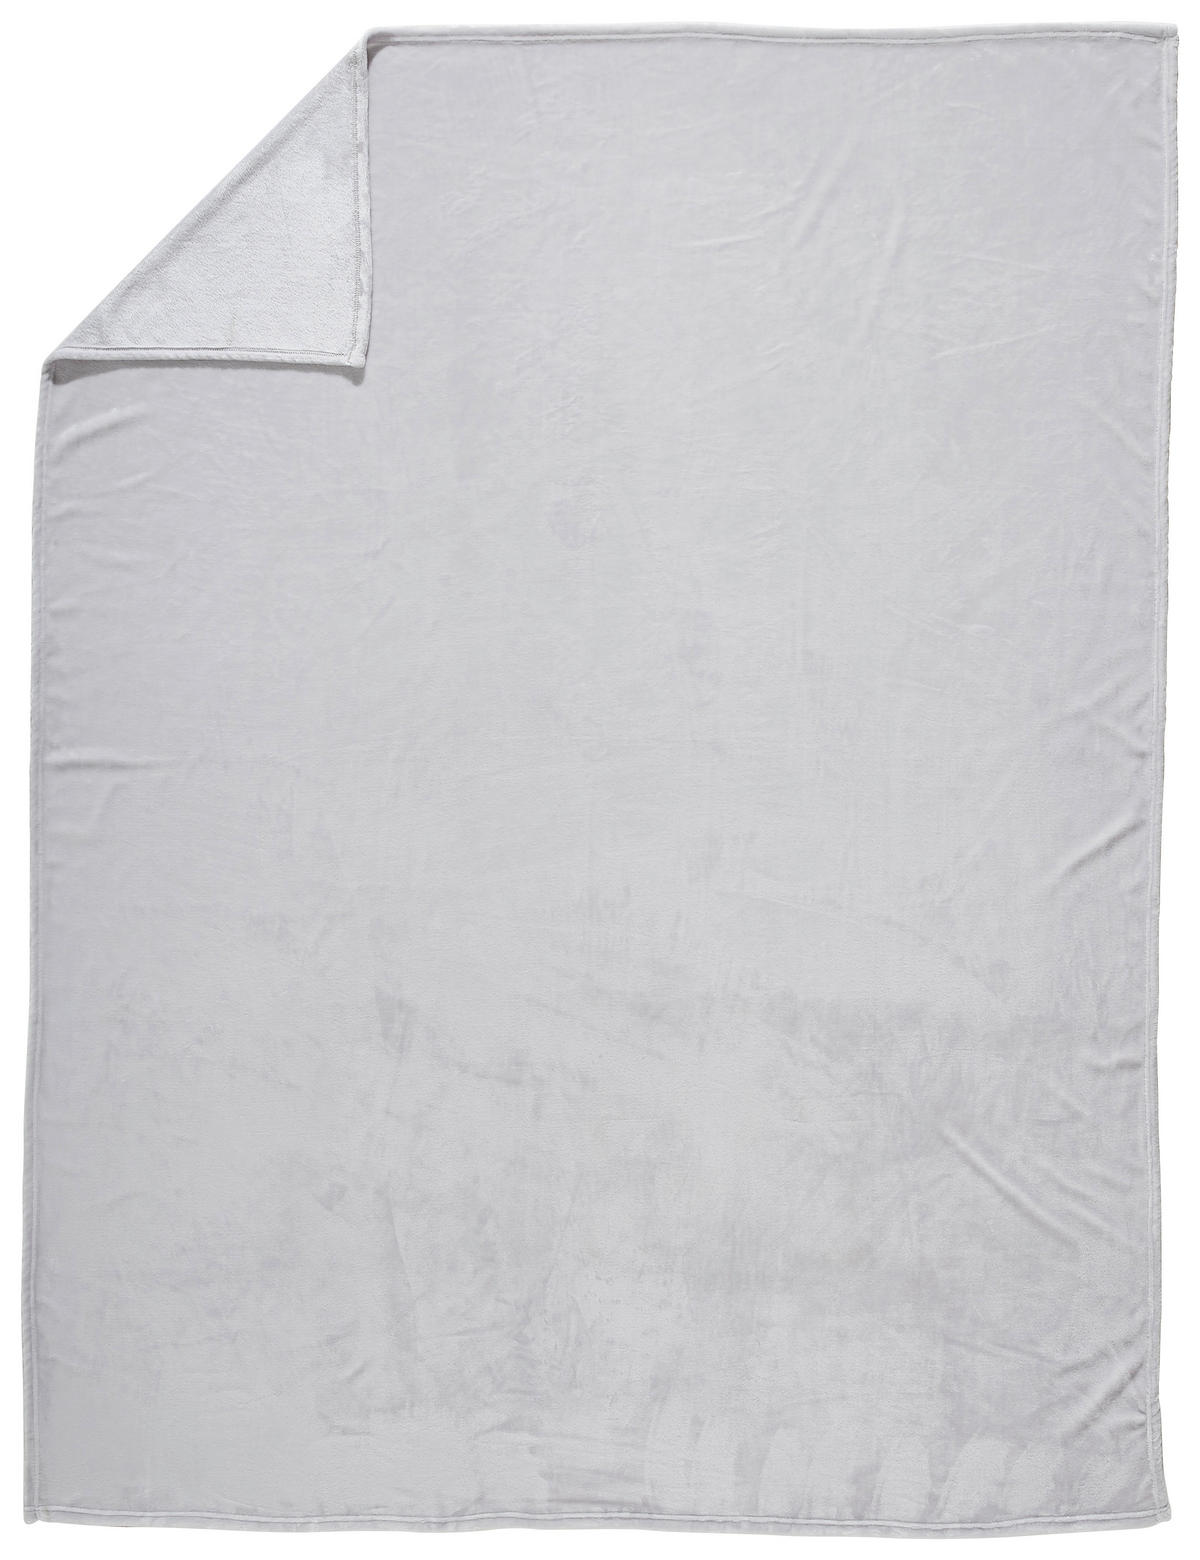 Wohndecke 140x190 cm aus Polyester Silberfarben in